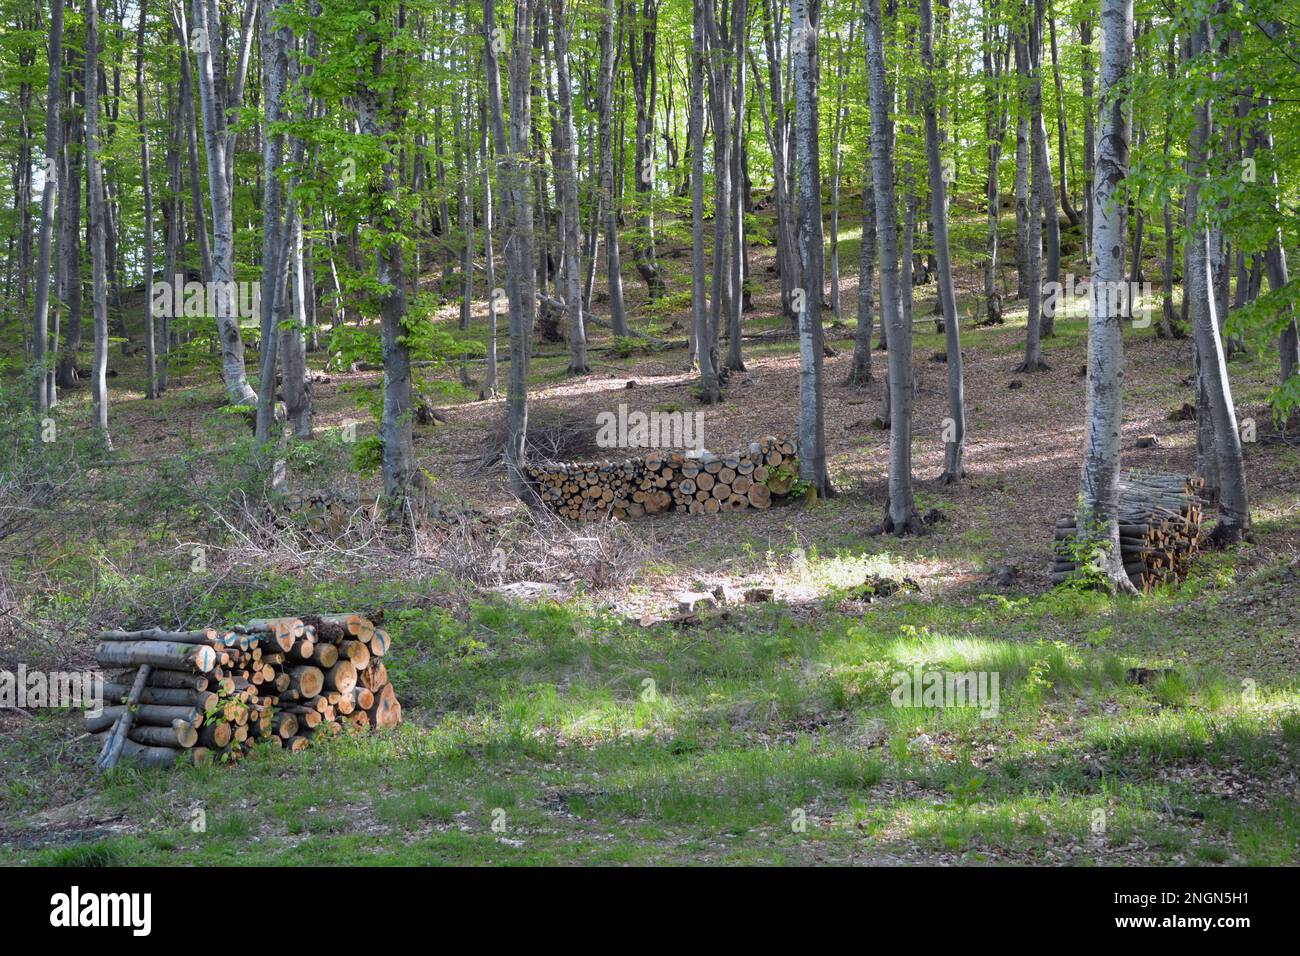 Diversi mucchi di tronchi tagliati di alberi accatastati all'aperto nella foresta. Immagine orizzontale. Ecologia, deforestazione e concetti di industria Foto Stock